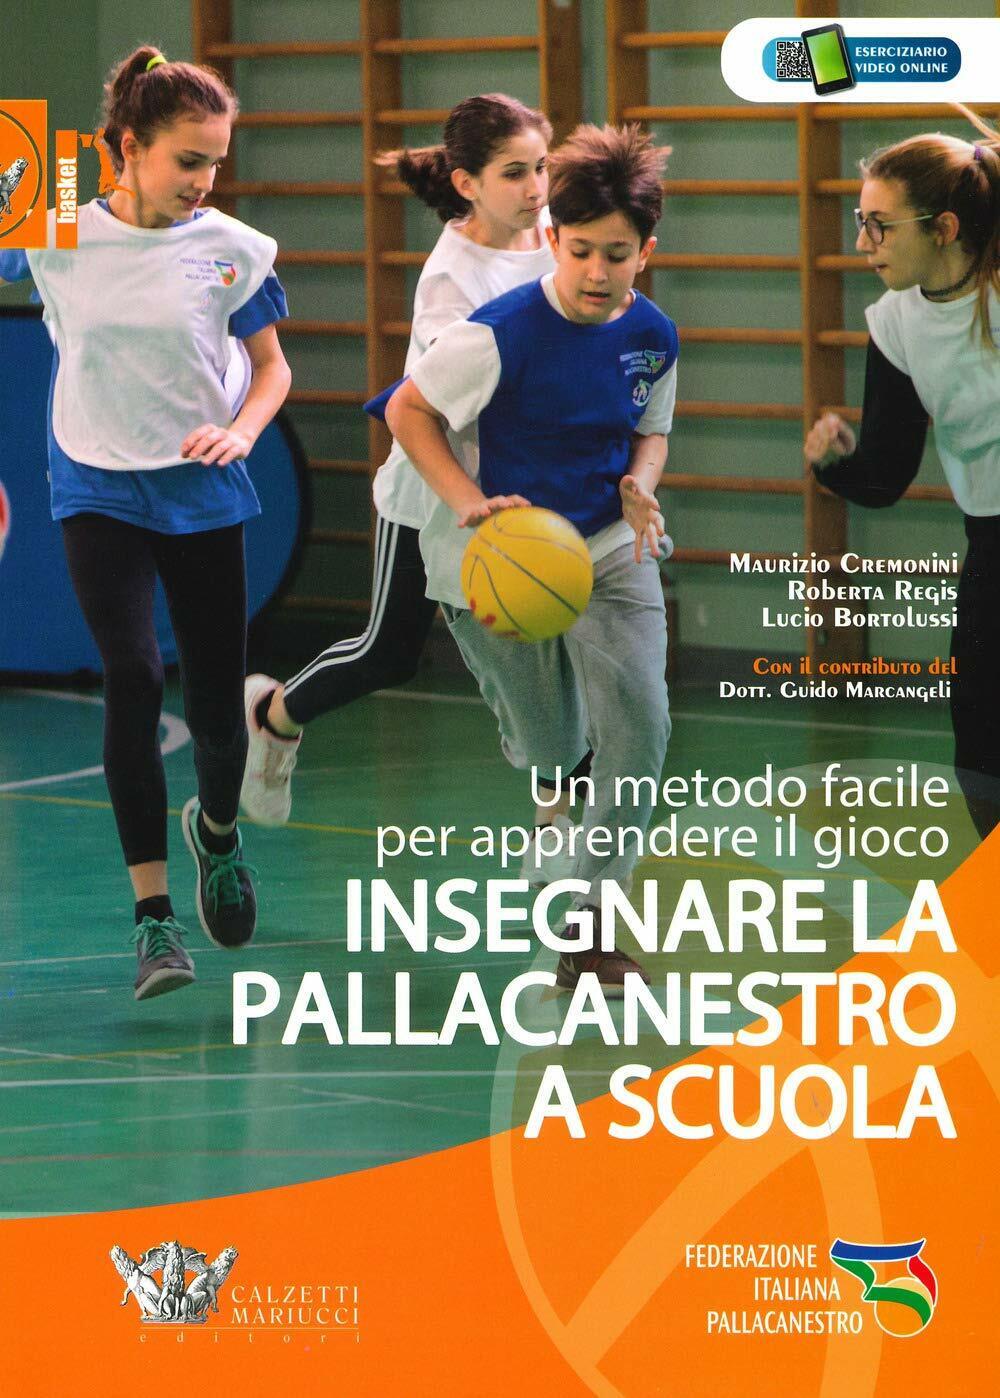 Insegnare la pallacanestro a scuola - Calzetti Mariucci, 2019